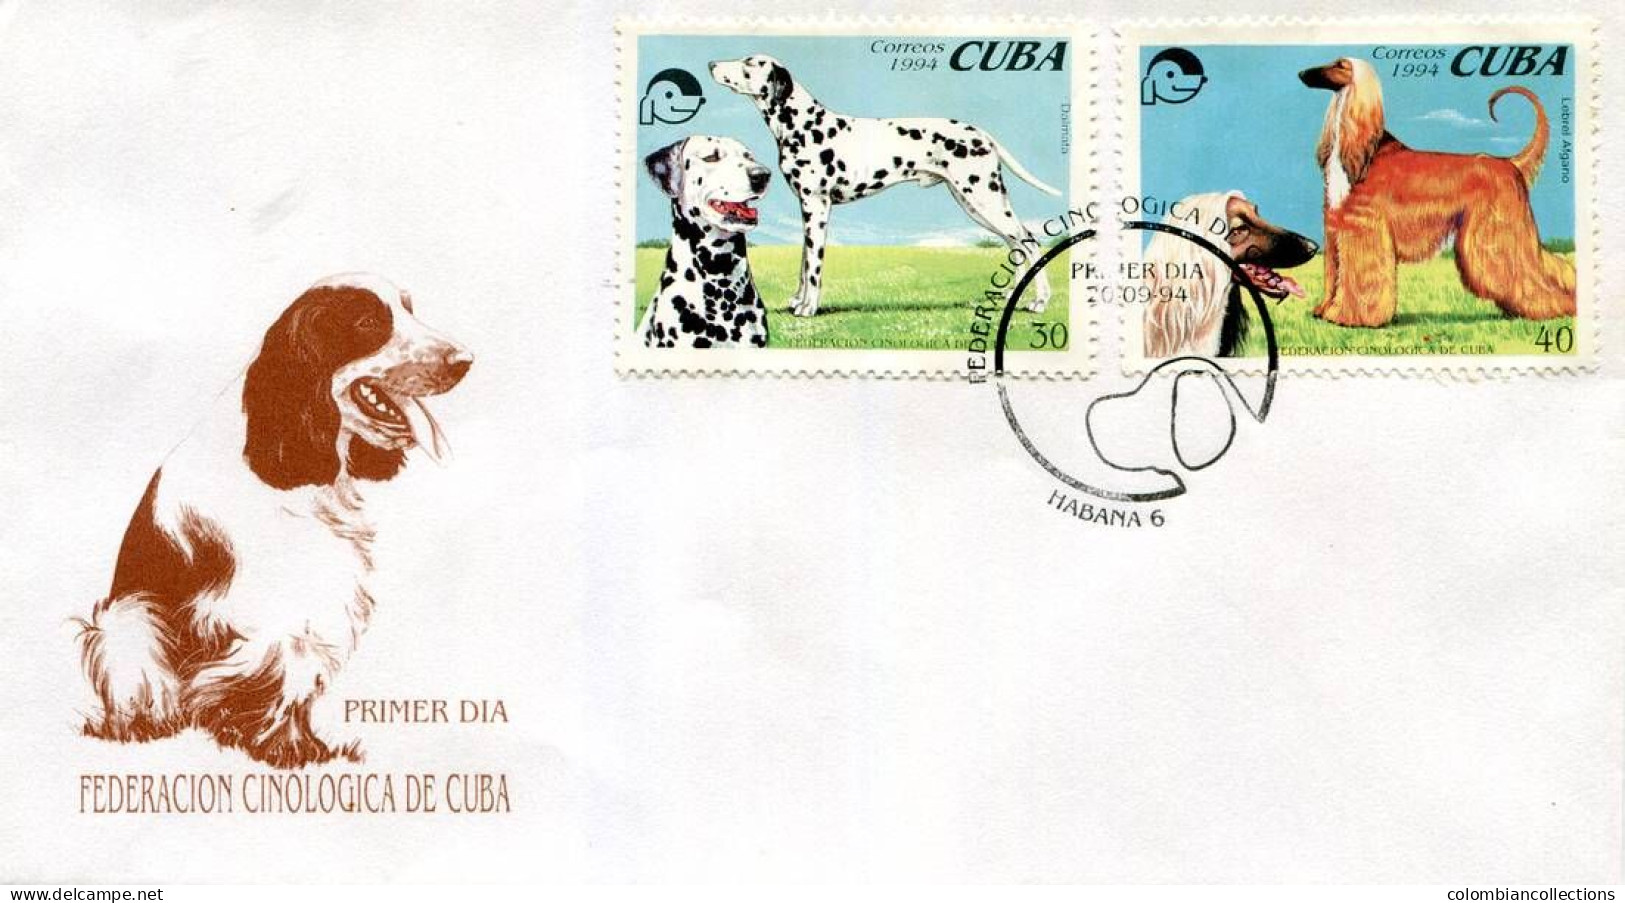 Lote CU1994-3F, Cuba, 1994, 2 SPD-FDC, Federacion Cinologica De Cuba. Perros, Dog - FDC